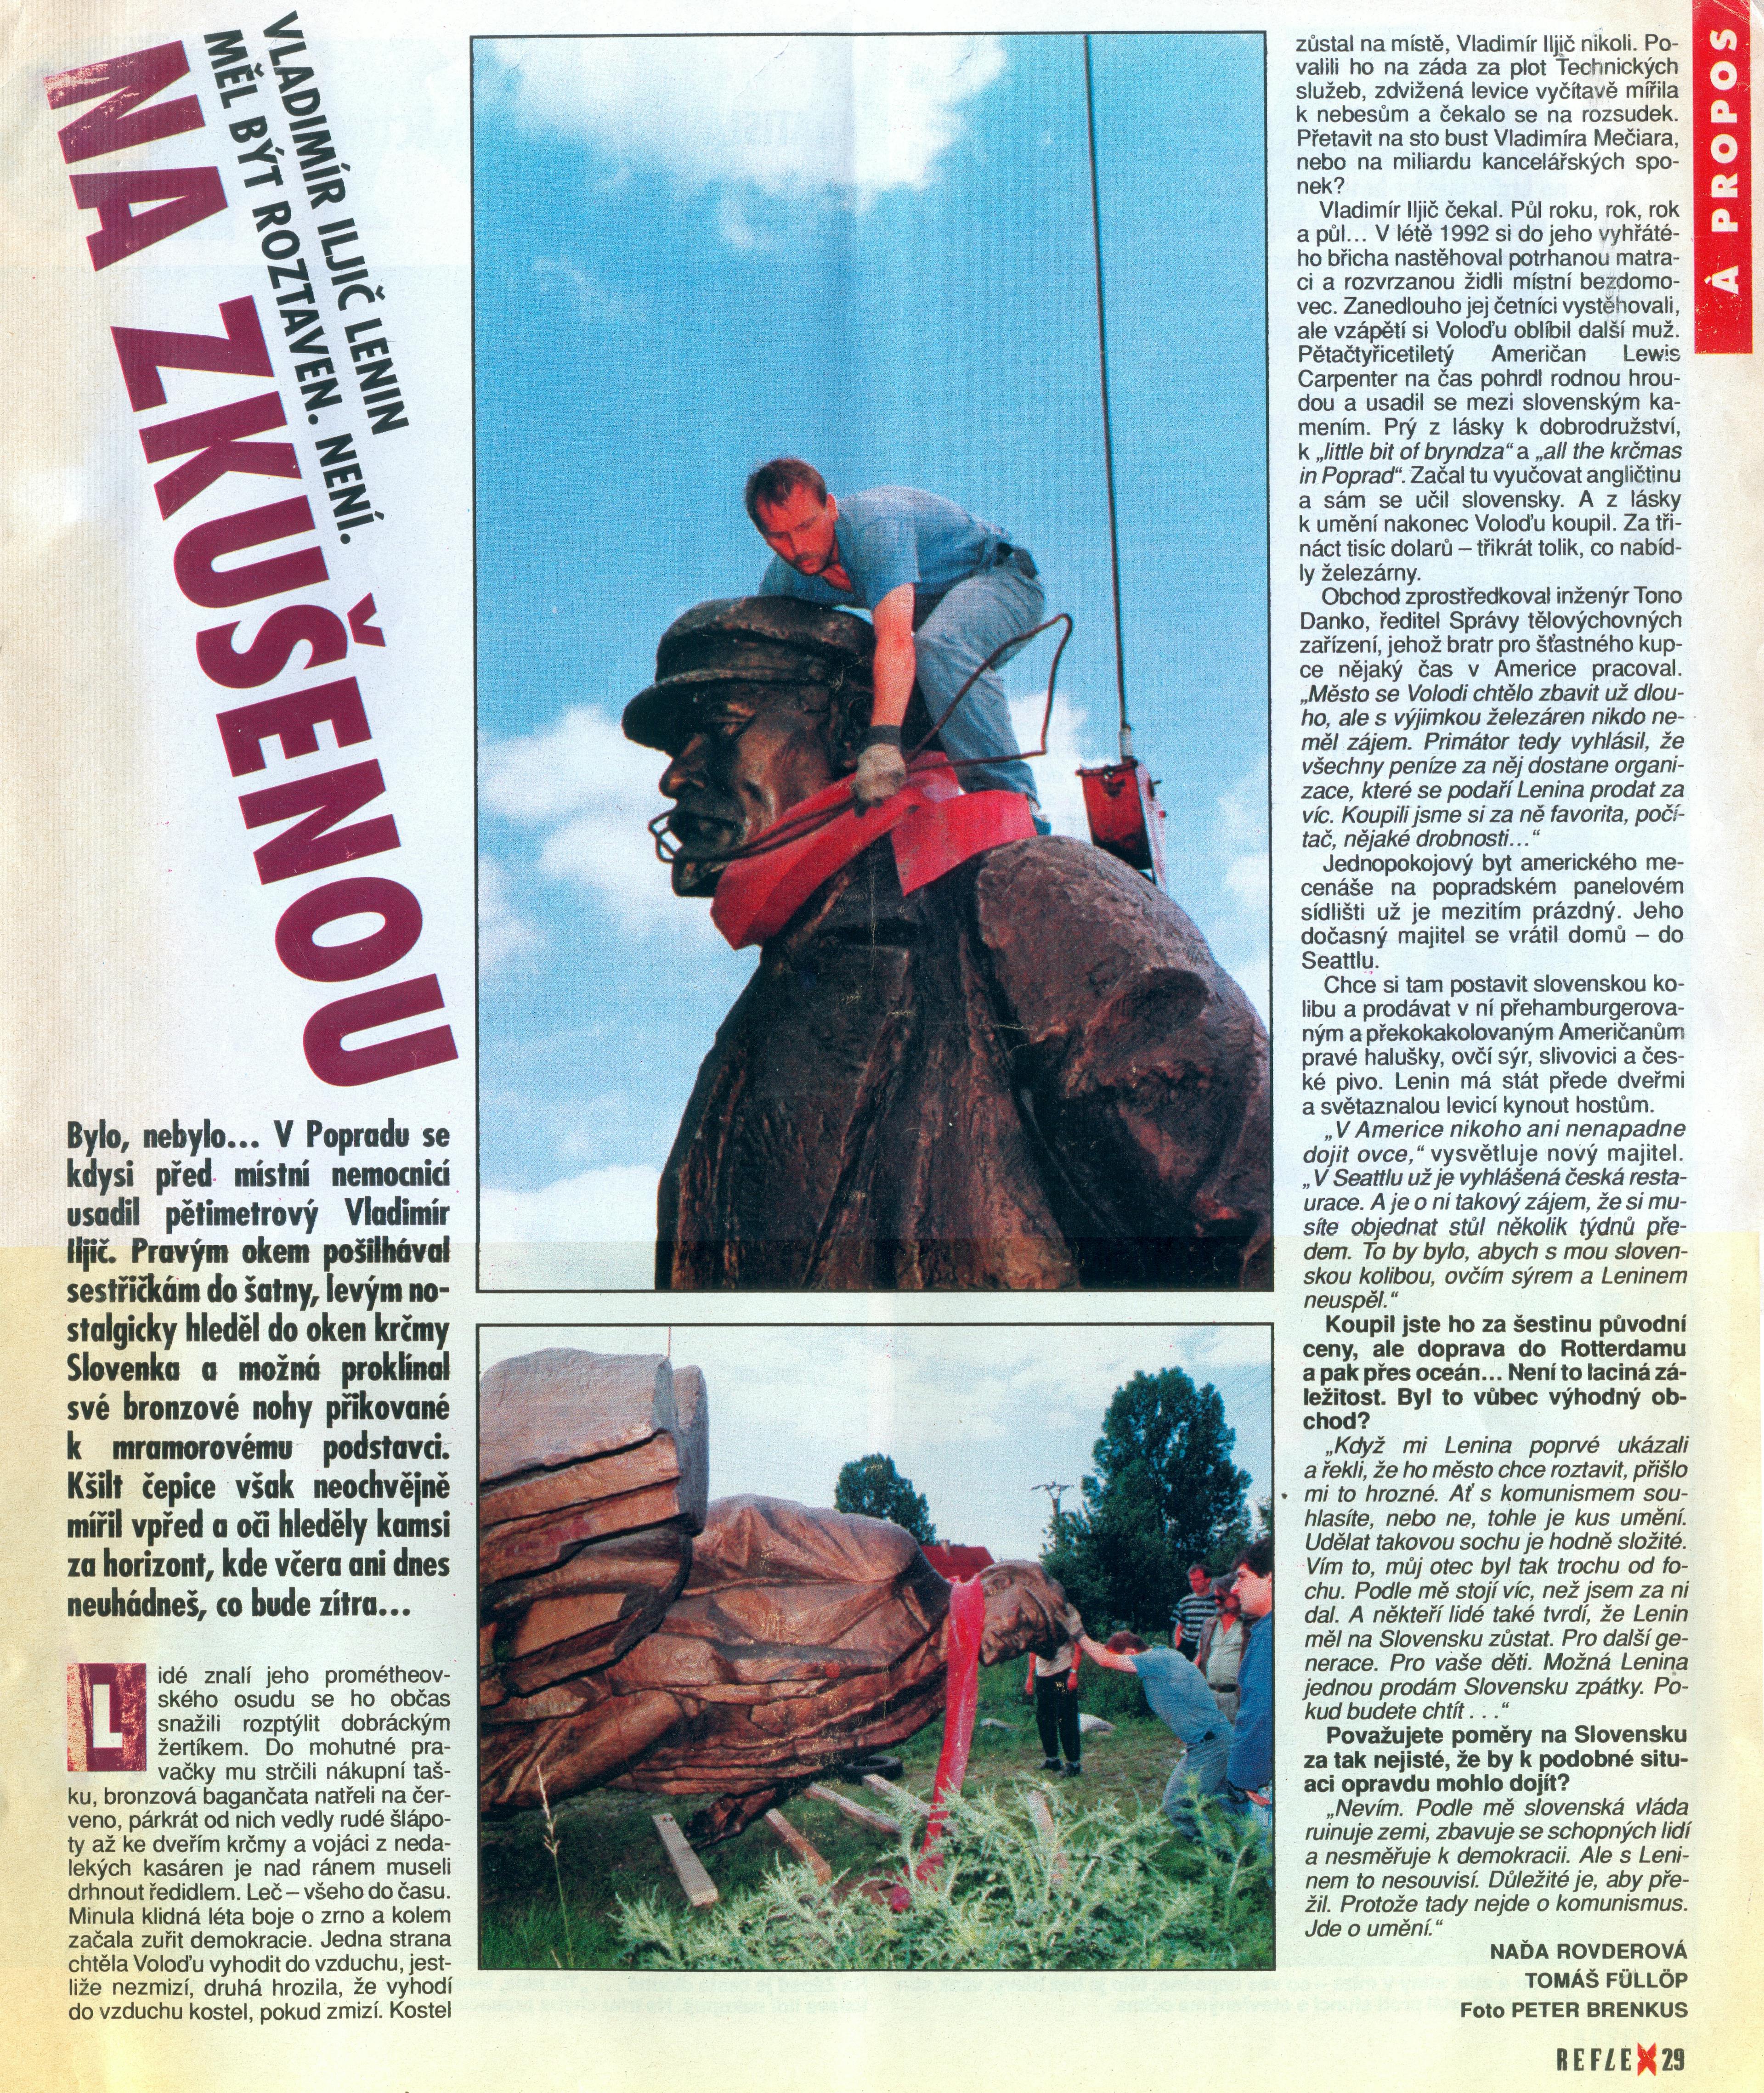 Text: Tomáš Fülöpp, Naďa Rovderová. Foto: Peter Brenkus, Reflex 41 (4. října, 1993), str. 29, Praha, Česká republika